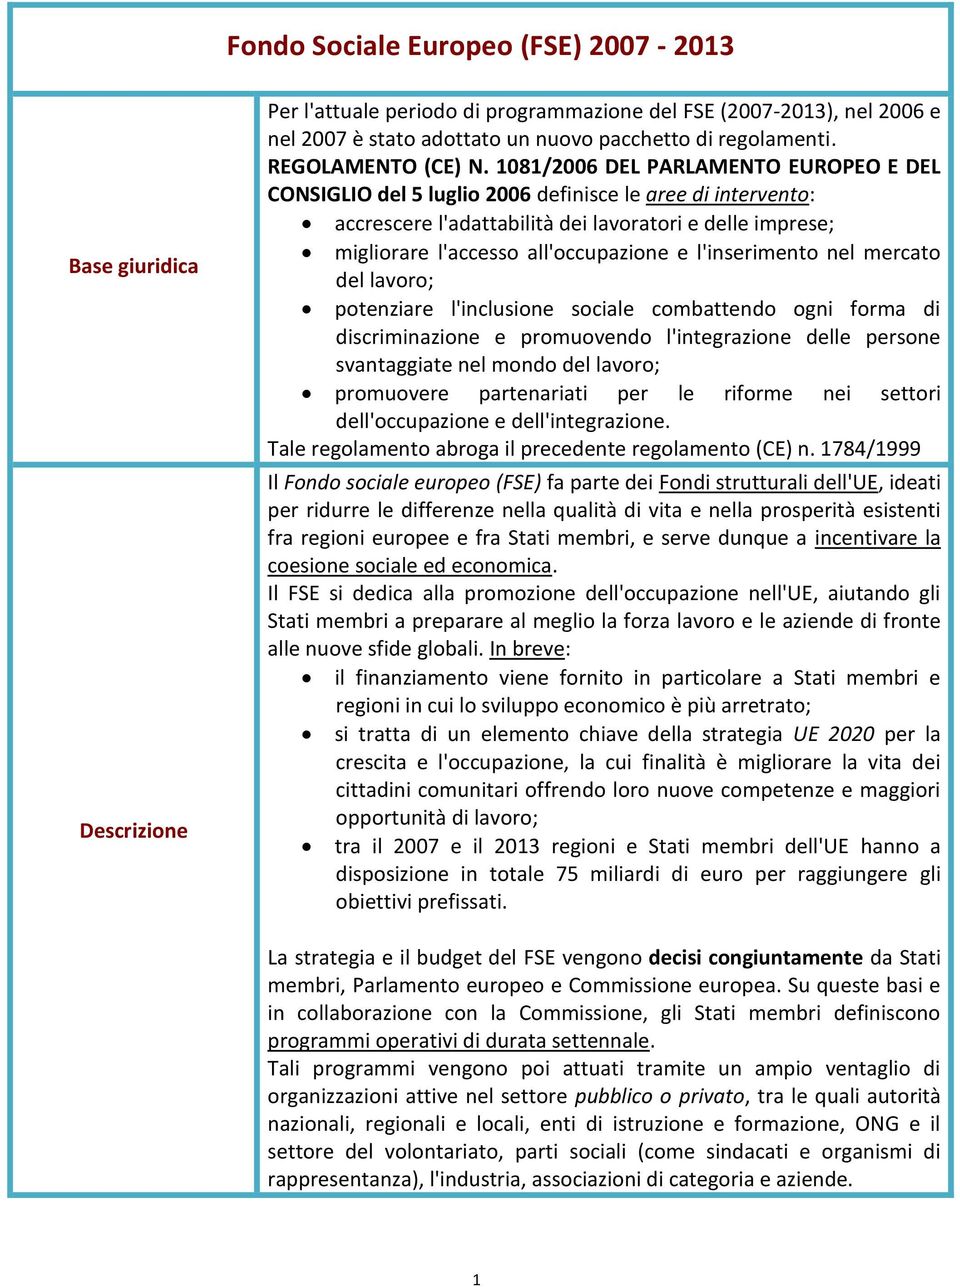 1081/2006 DEL PARLAMENTO EUROPEO E DEL CONSIGLIO del 5 luglio 2006 definisce le aree di intervento: accrescere l'adattabilità dei lavoratori e delle imprese; migliorare l'accesso all'occupazione e